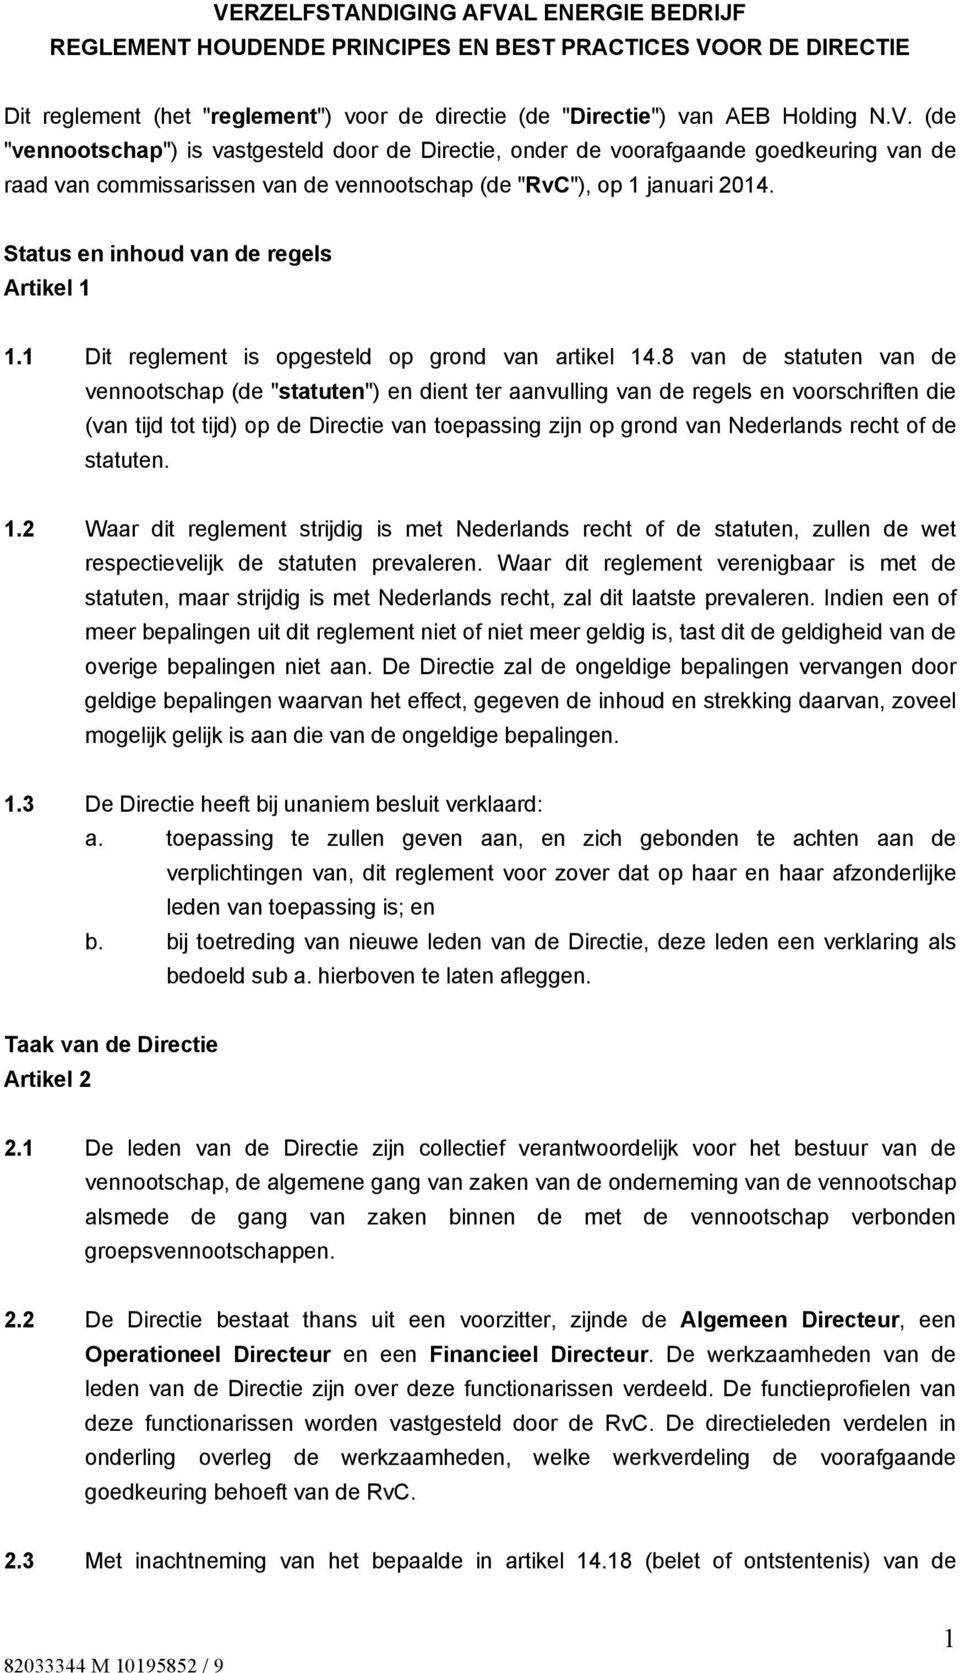 8 van de statuten van de vennootschap (de "statuten") en dient ter aanvulling van de regels en voorschriften die (van tijd tot tijd) op de Directie van toepassing zijn op grond van Nederlands recht